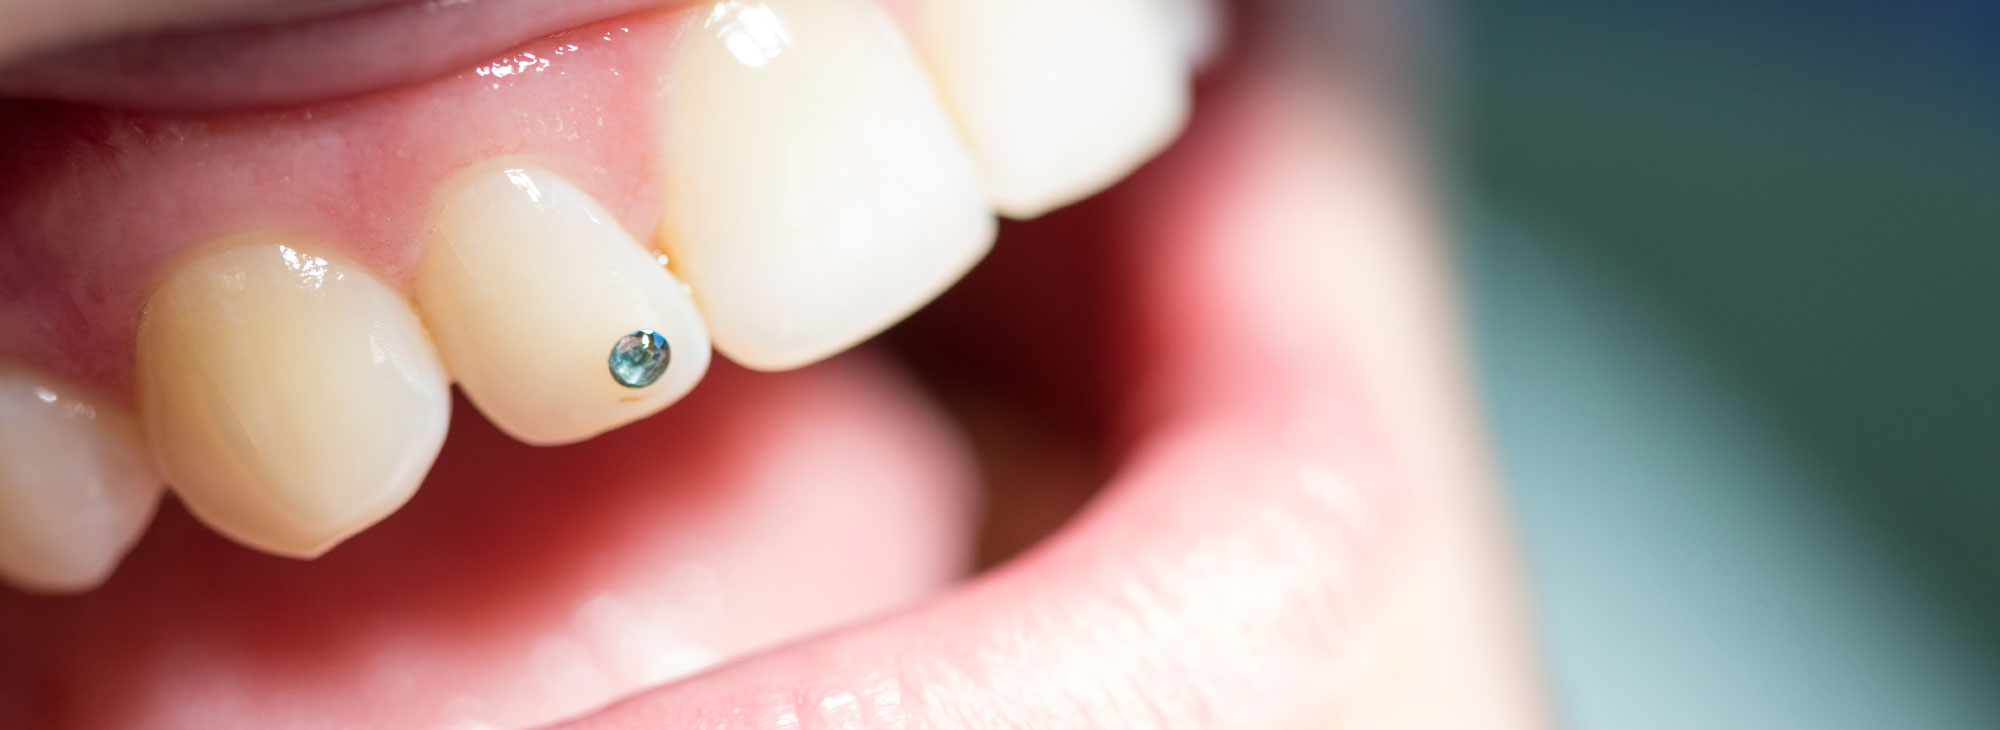 Nahaufnahme eines Mundes mit qualitativ hochwertigen und natürlich wirkenden Zahnersatz durch die Zahnarztpraxis Zahnärzte im Wengentor in Ulm